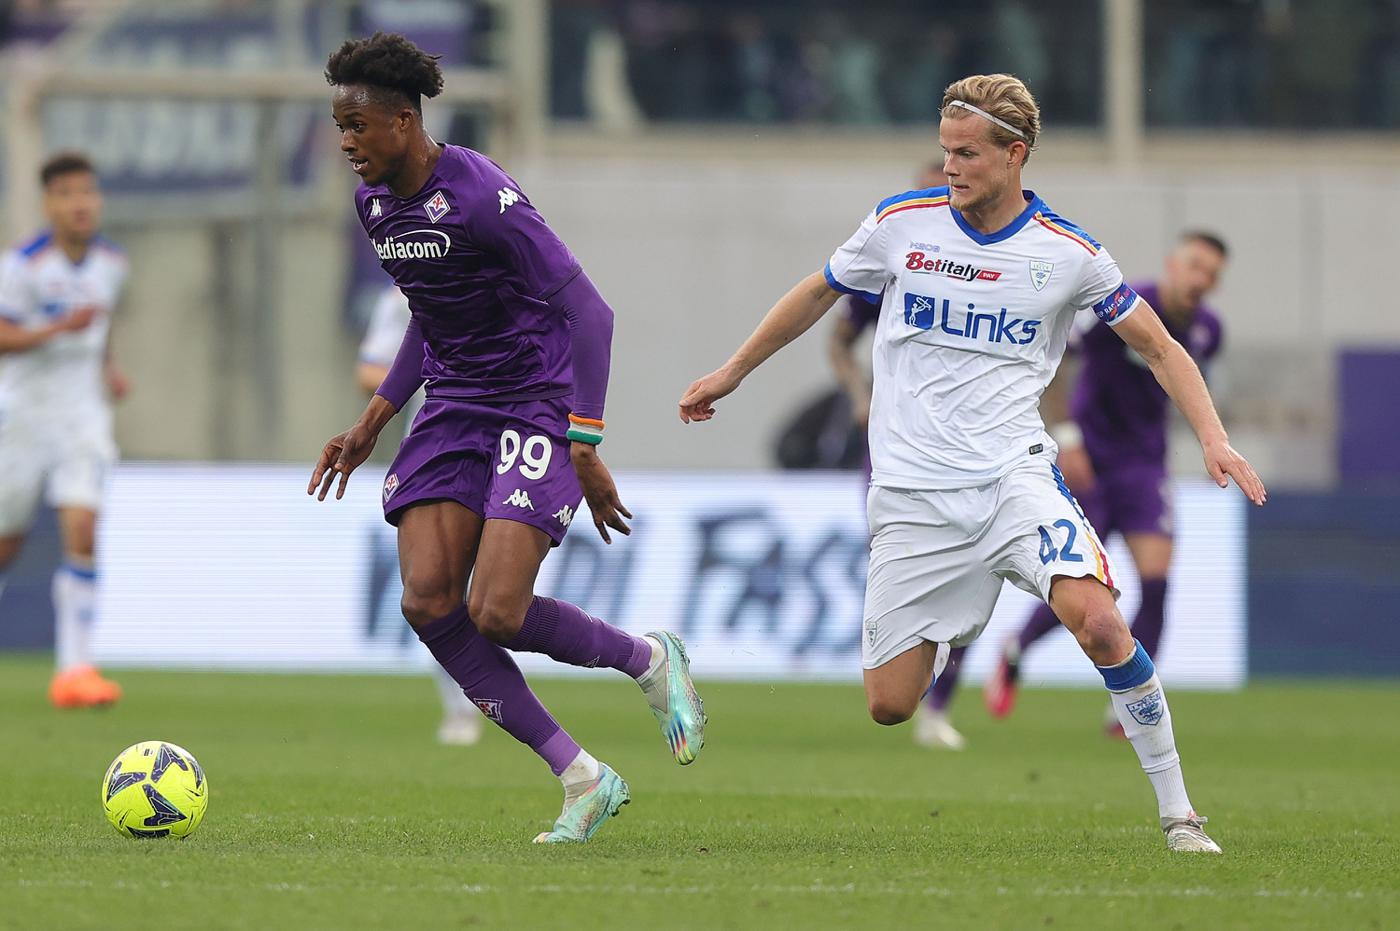 Fiorentina - Lecce - 1:0. Italienische Meisterschaft, 27. Runde. Spielbericht, Statistik.